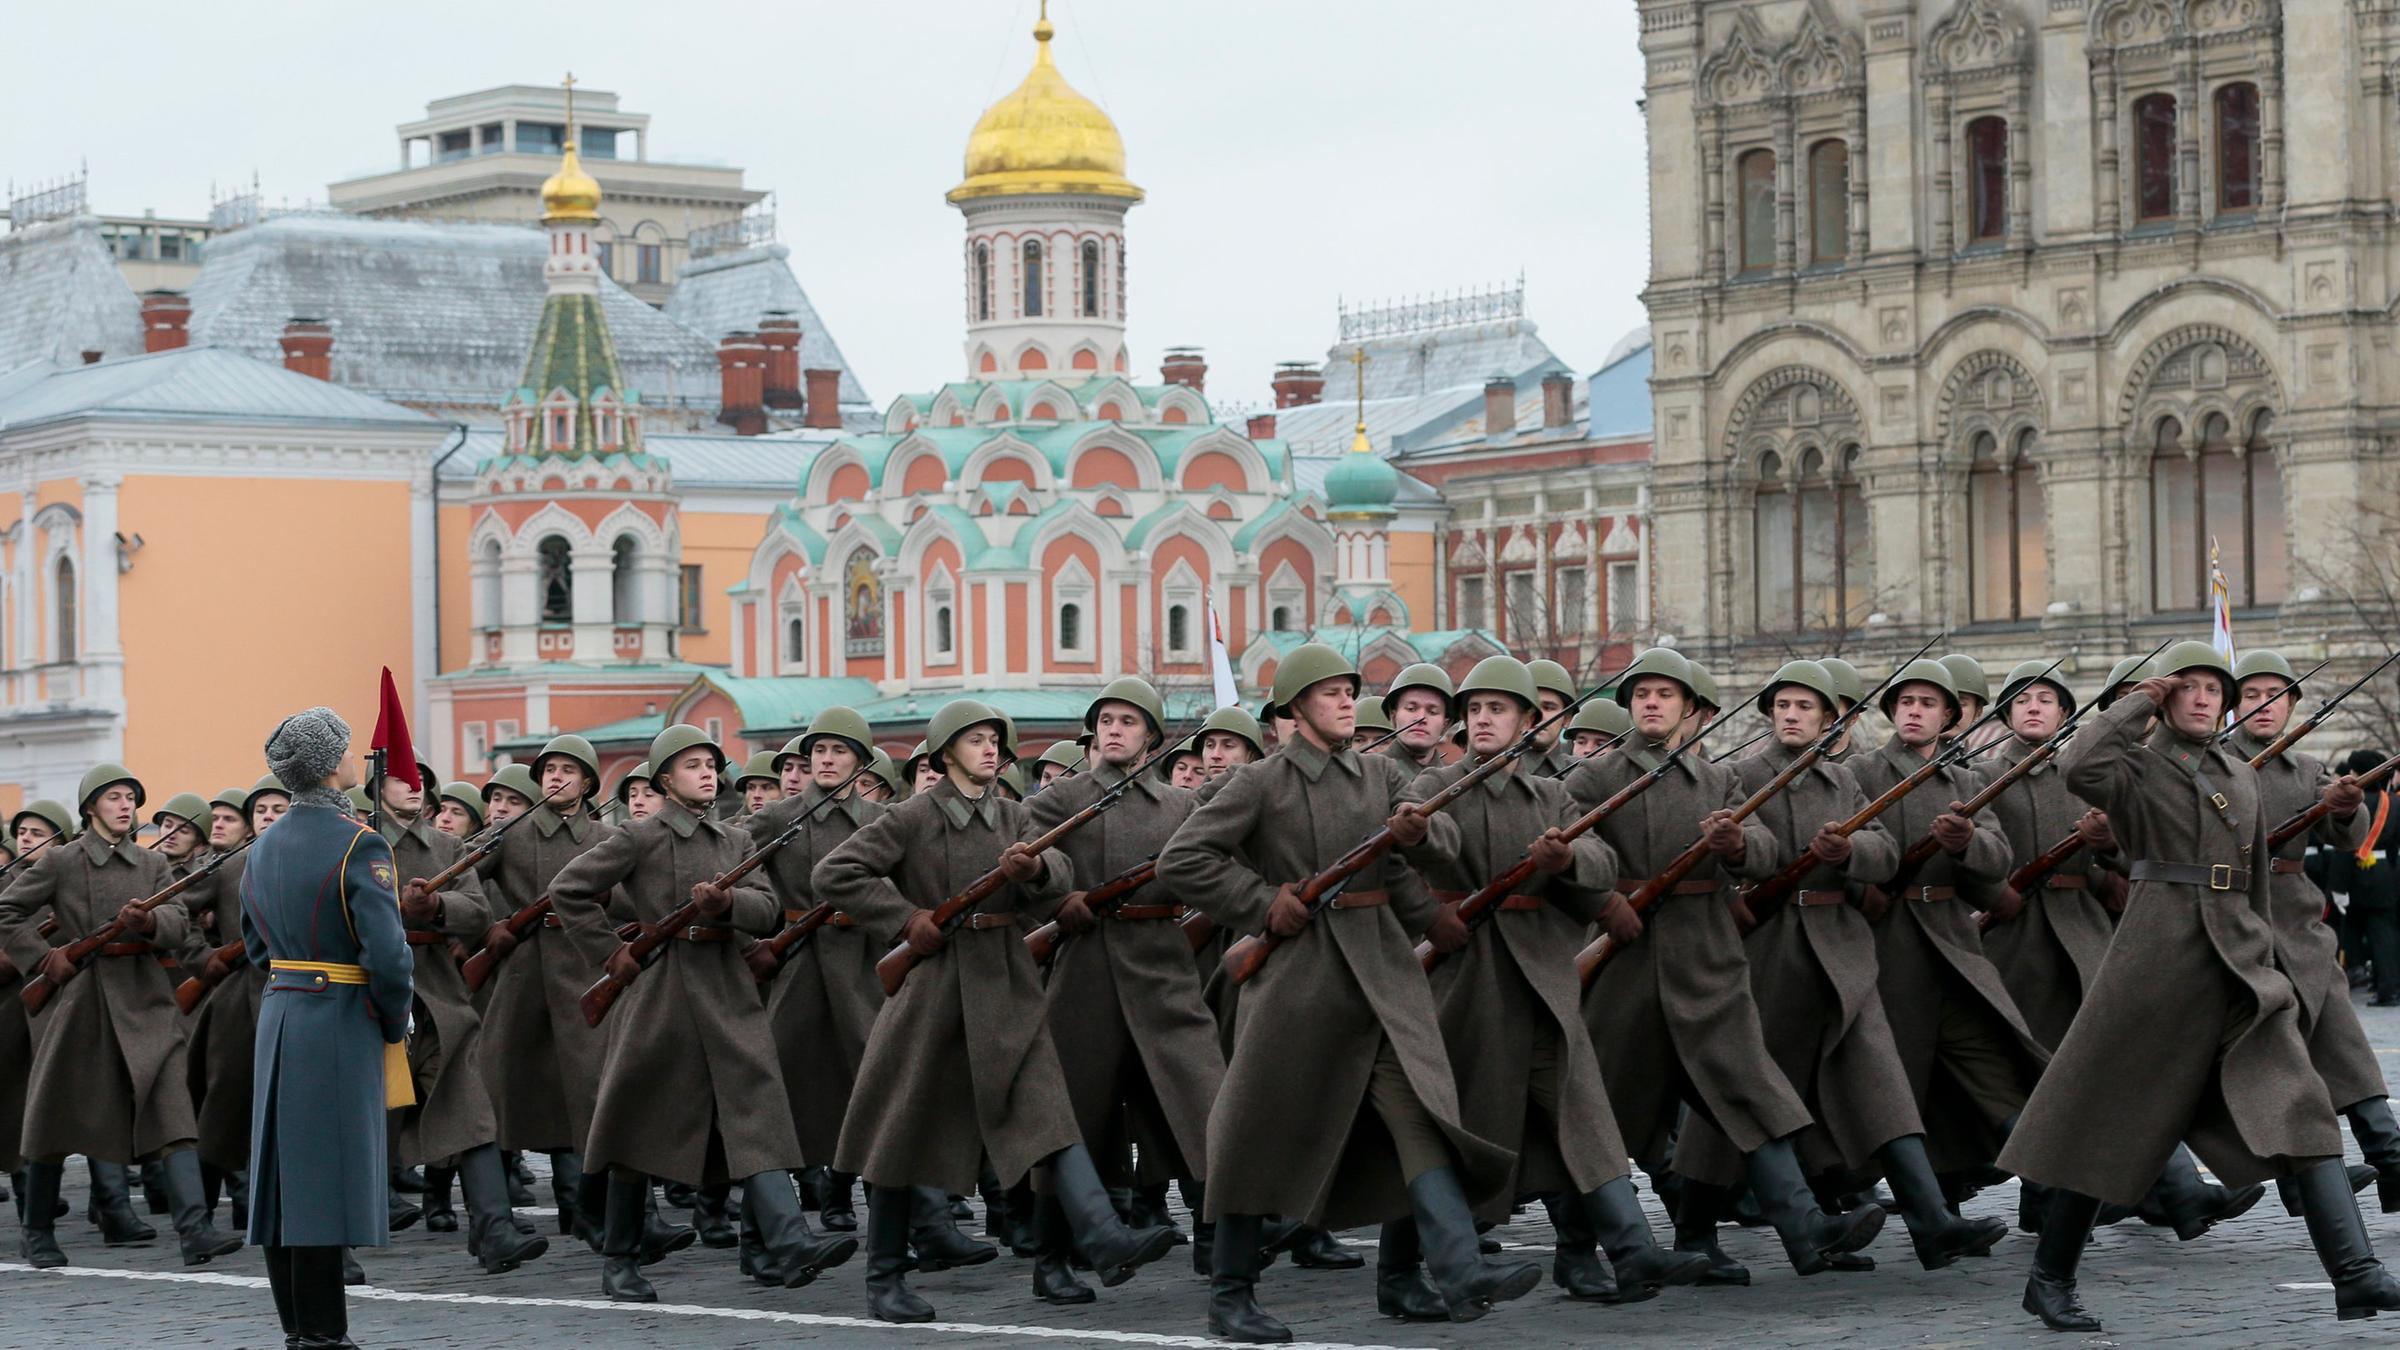 Где проходил парад в 1941 году. Парад 7 ноября 1941. Парад 1941 года на красной площади. Парад на красной площади 7 ноября 1941. Фото парада 7 ноября 1941 года на красной площади в Москве.